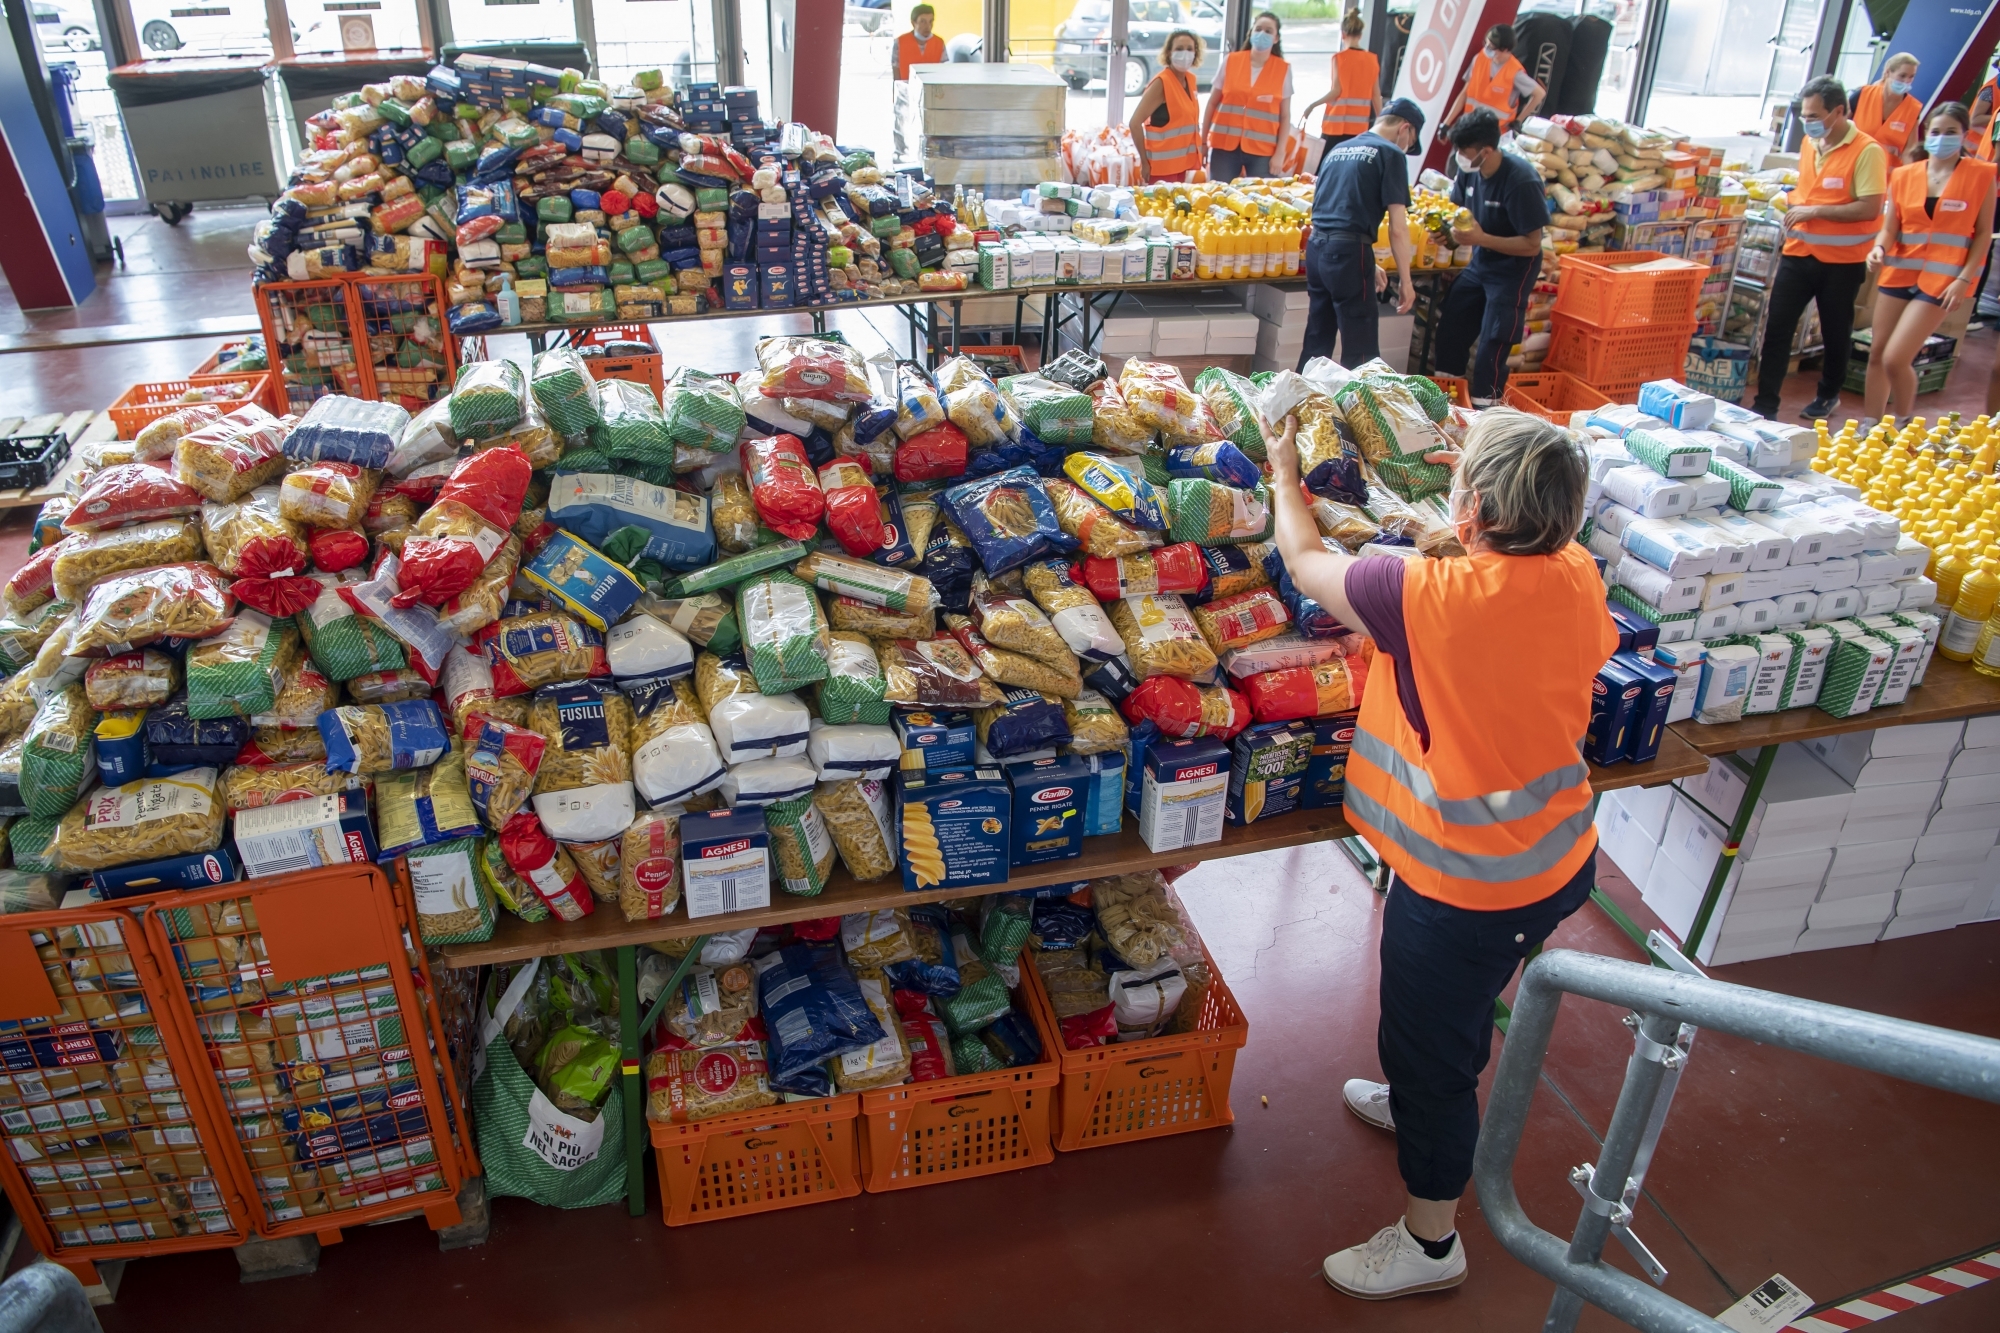 Des bénévoles s'affairent autour de la préparation de sacs alimentaires, organisée par la Caravane de la Solidarité à Genève.